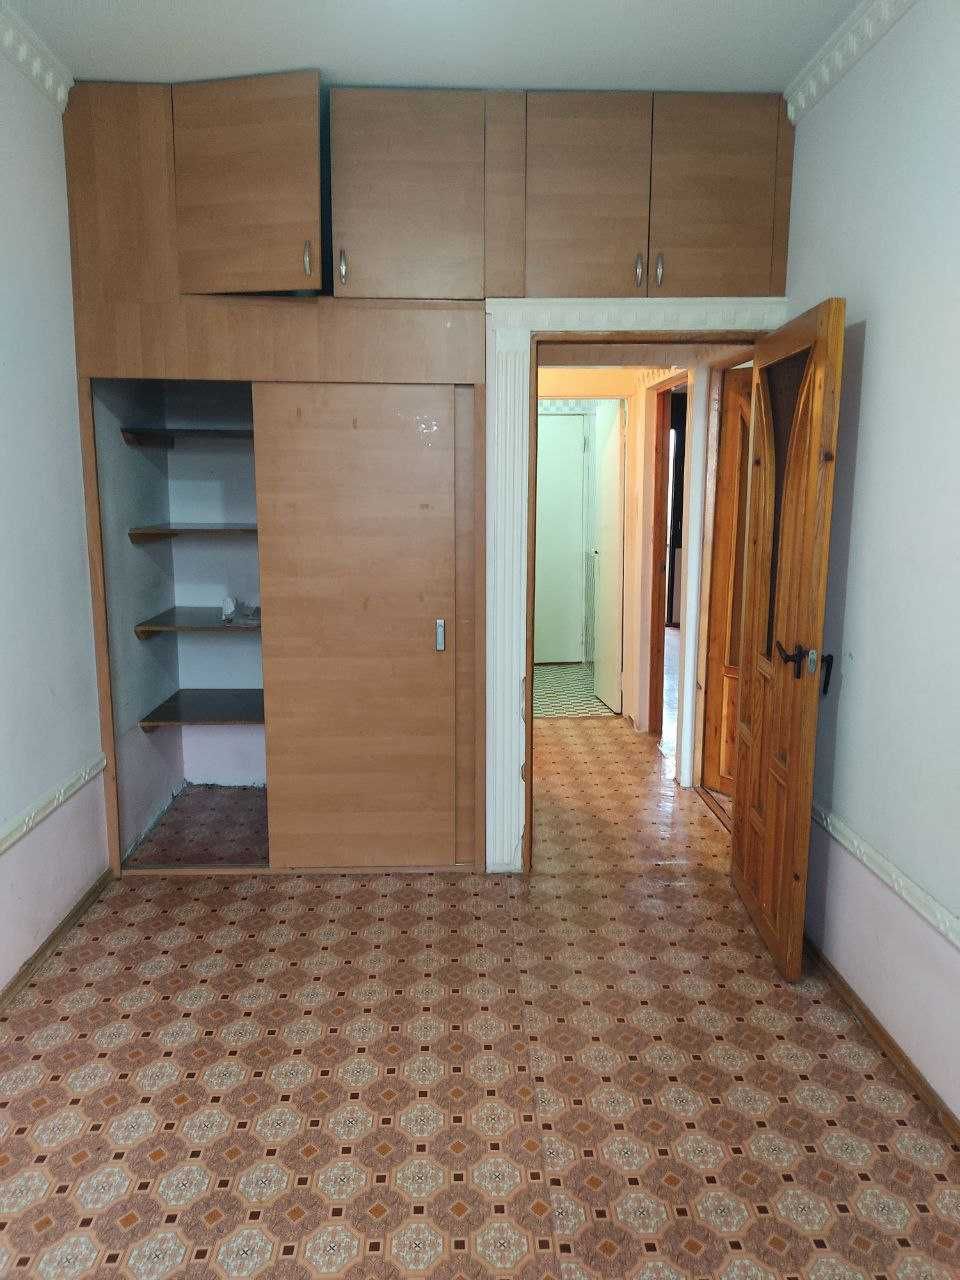 Квартира 3 комнатная на Чиланзаре 19 квартале Батальйон